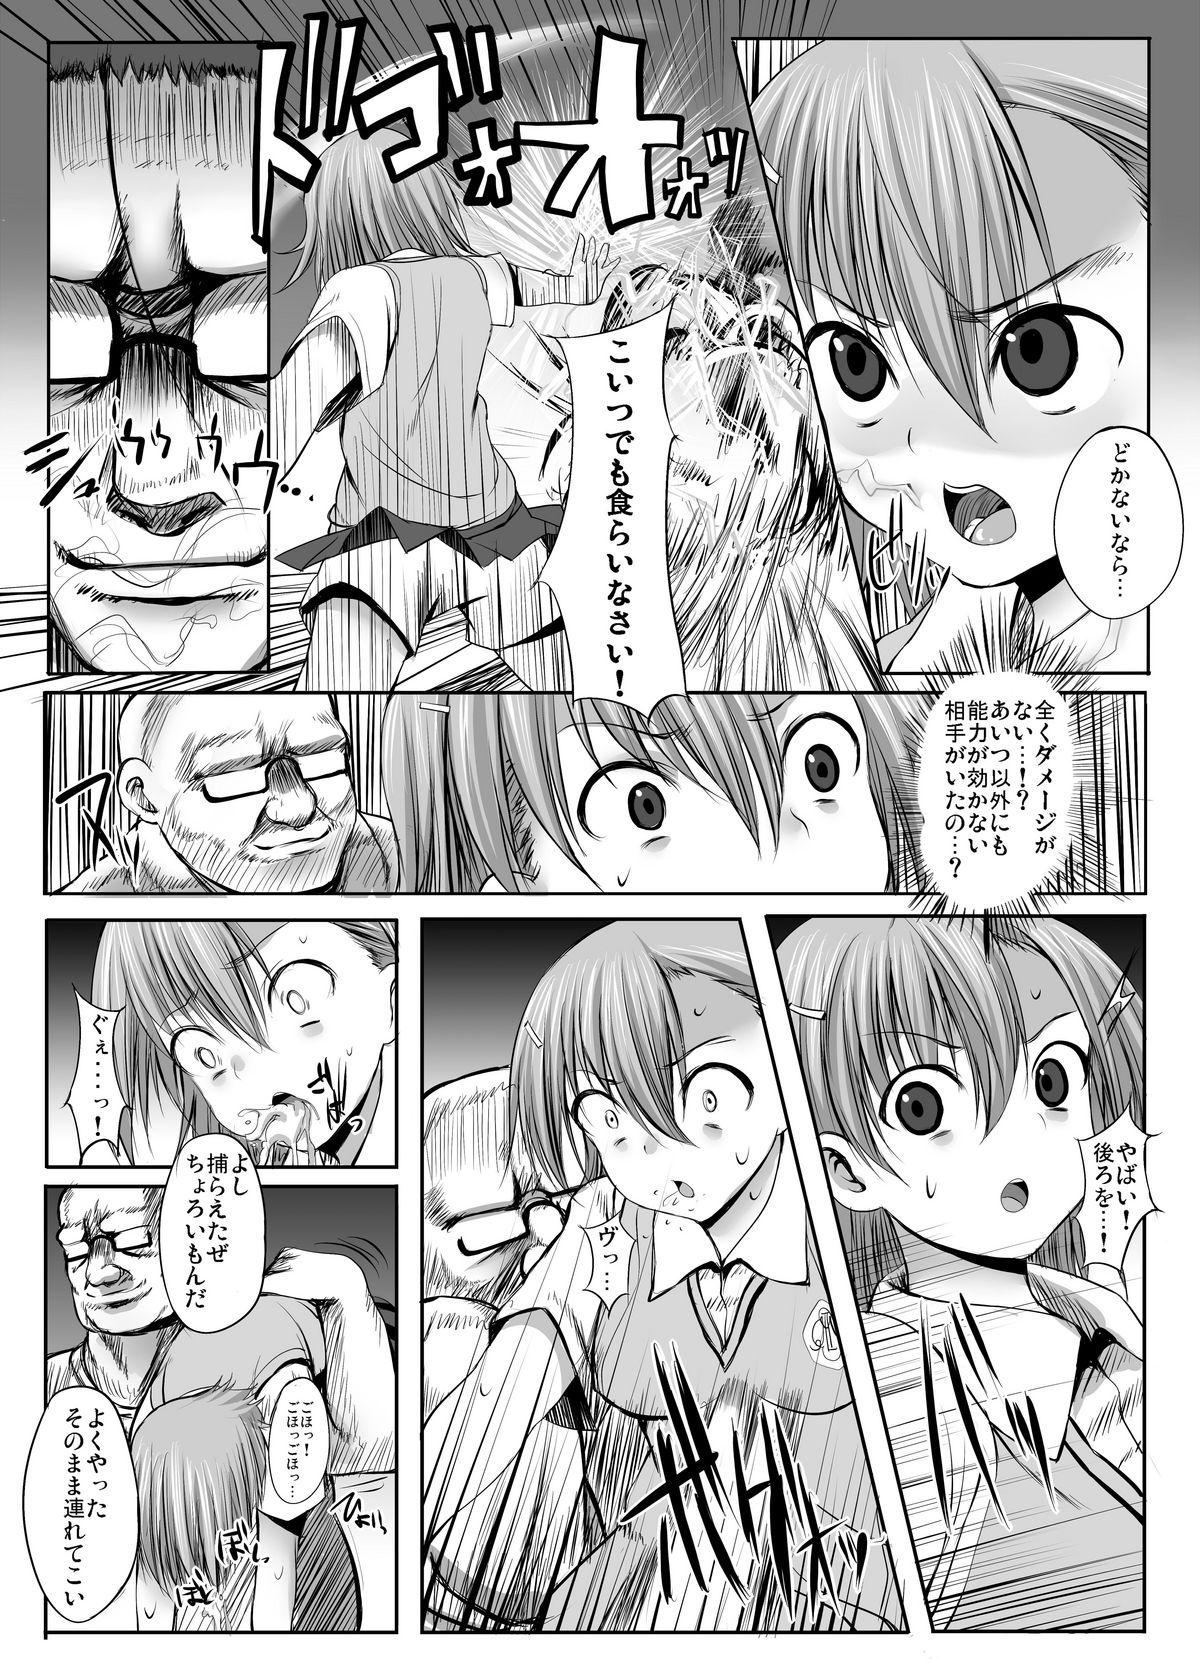 Safadinha ESP・BREAKER - Toaru kagaku no railgun Toaru majutsu no index Pau - Page 3